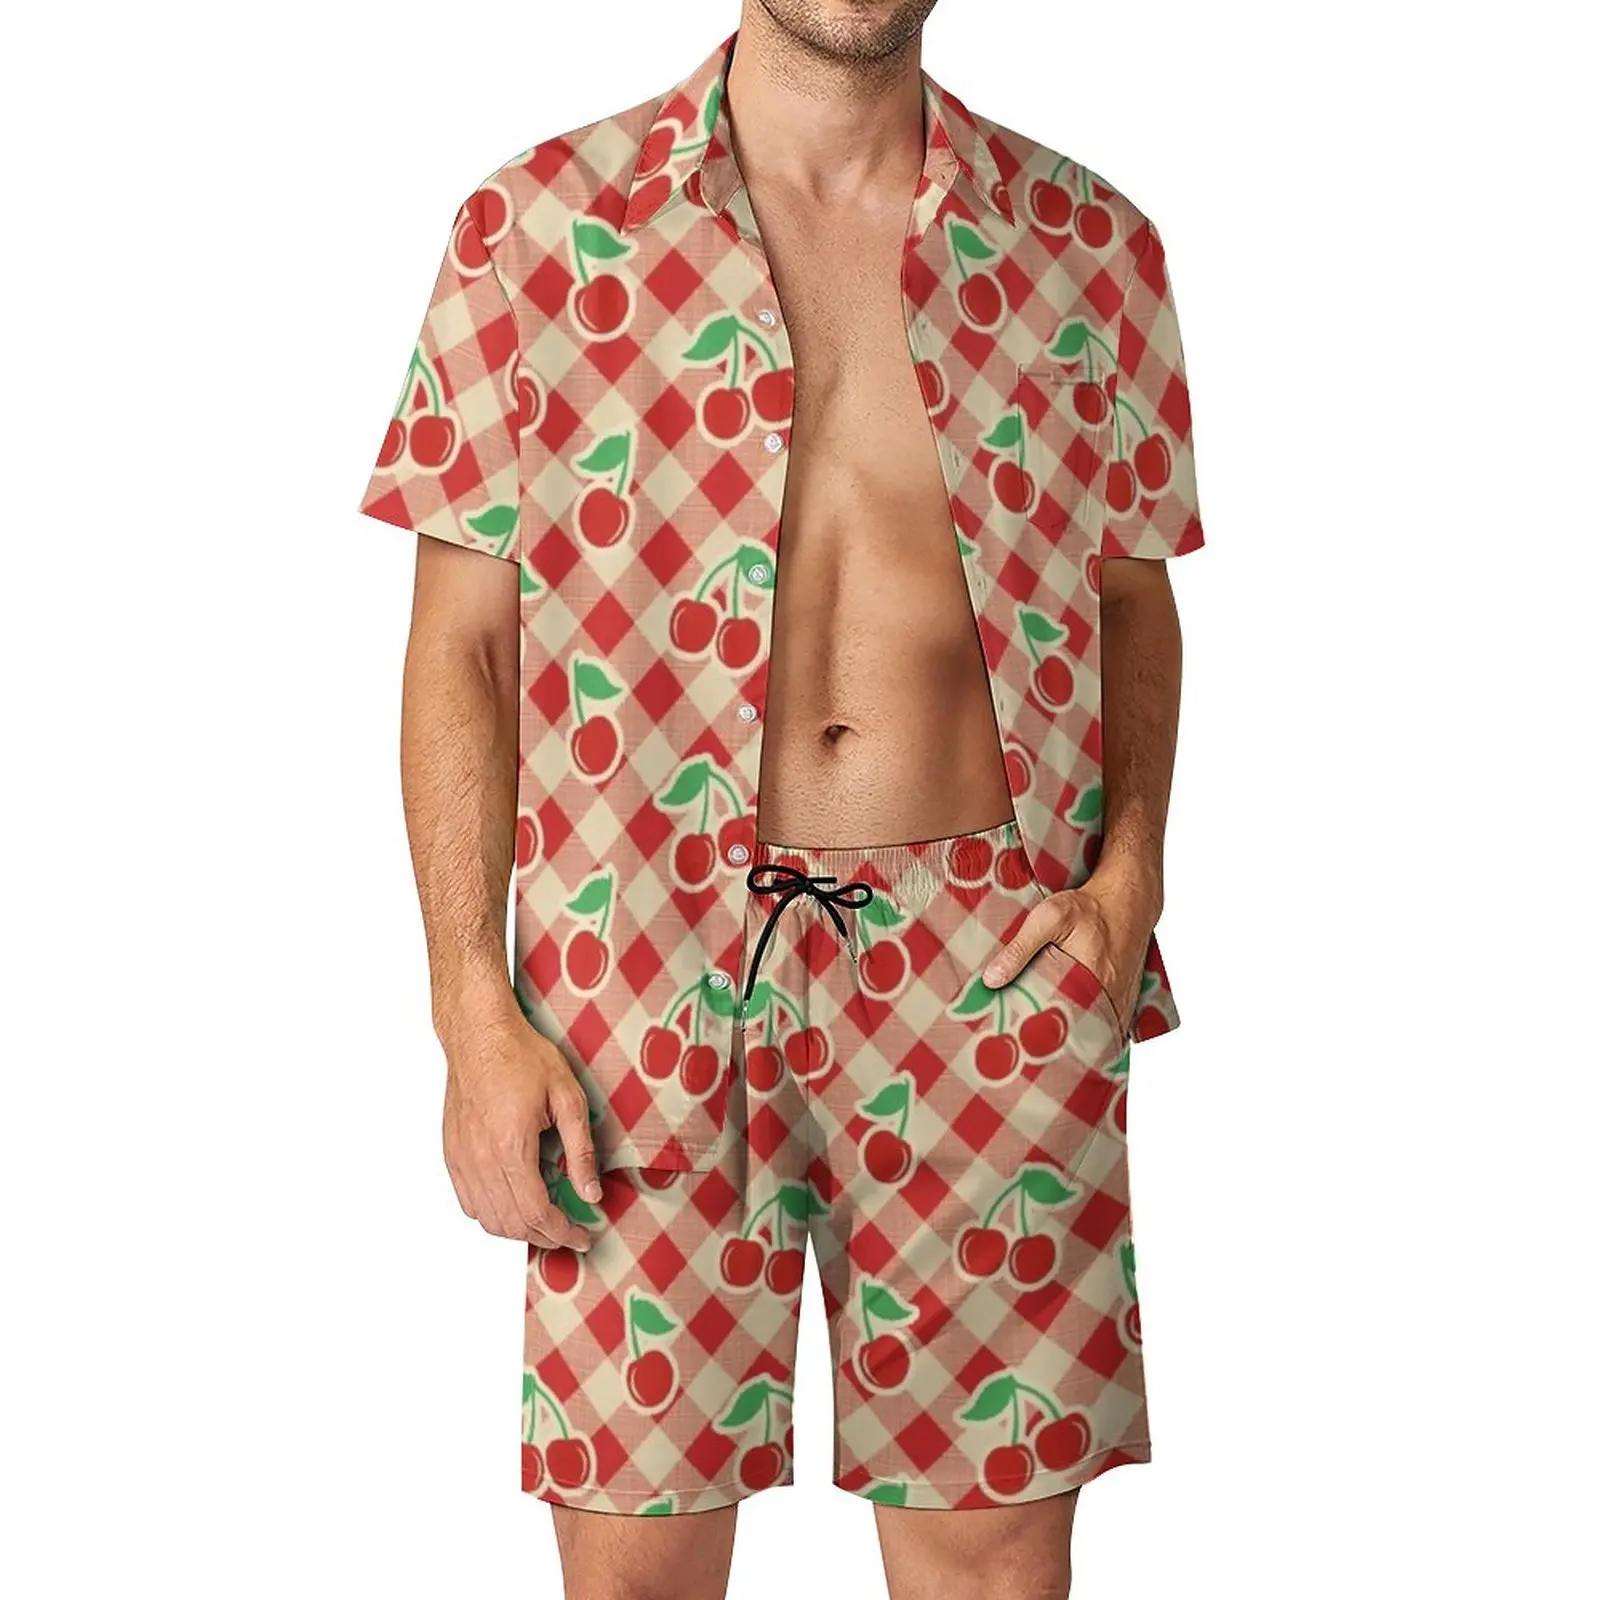 

Мужской винтажный комплект из шорт и рубашки, повседневный пляжный костюм в клетку, с короткими рукавами и принтом вишни